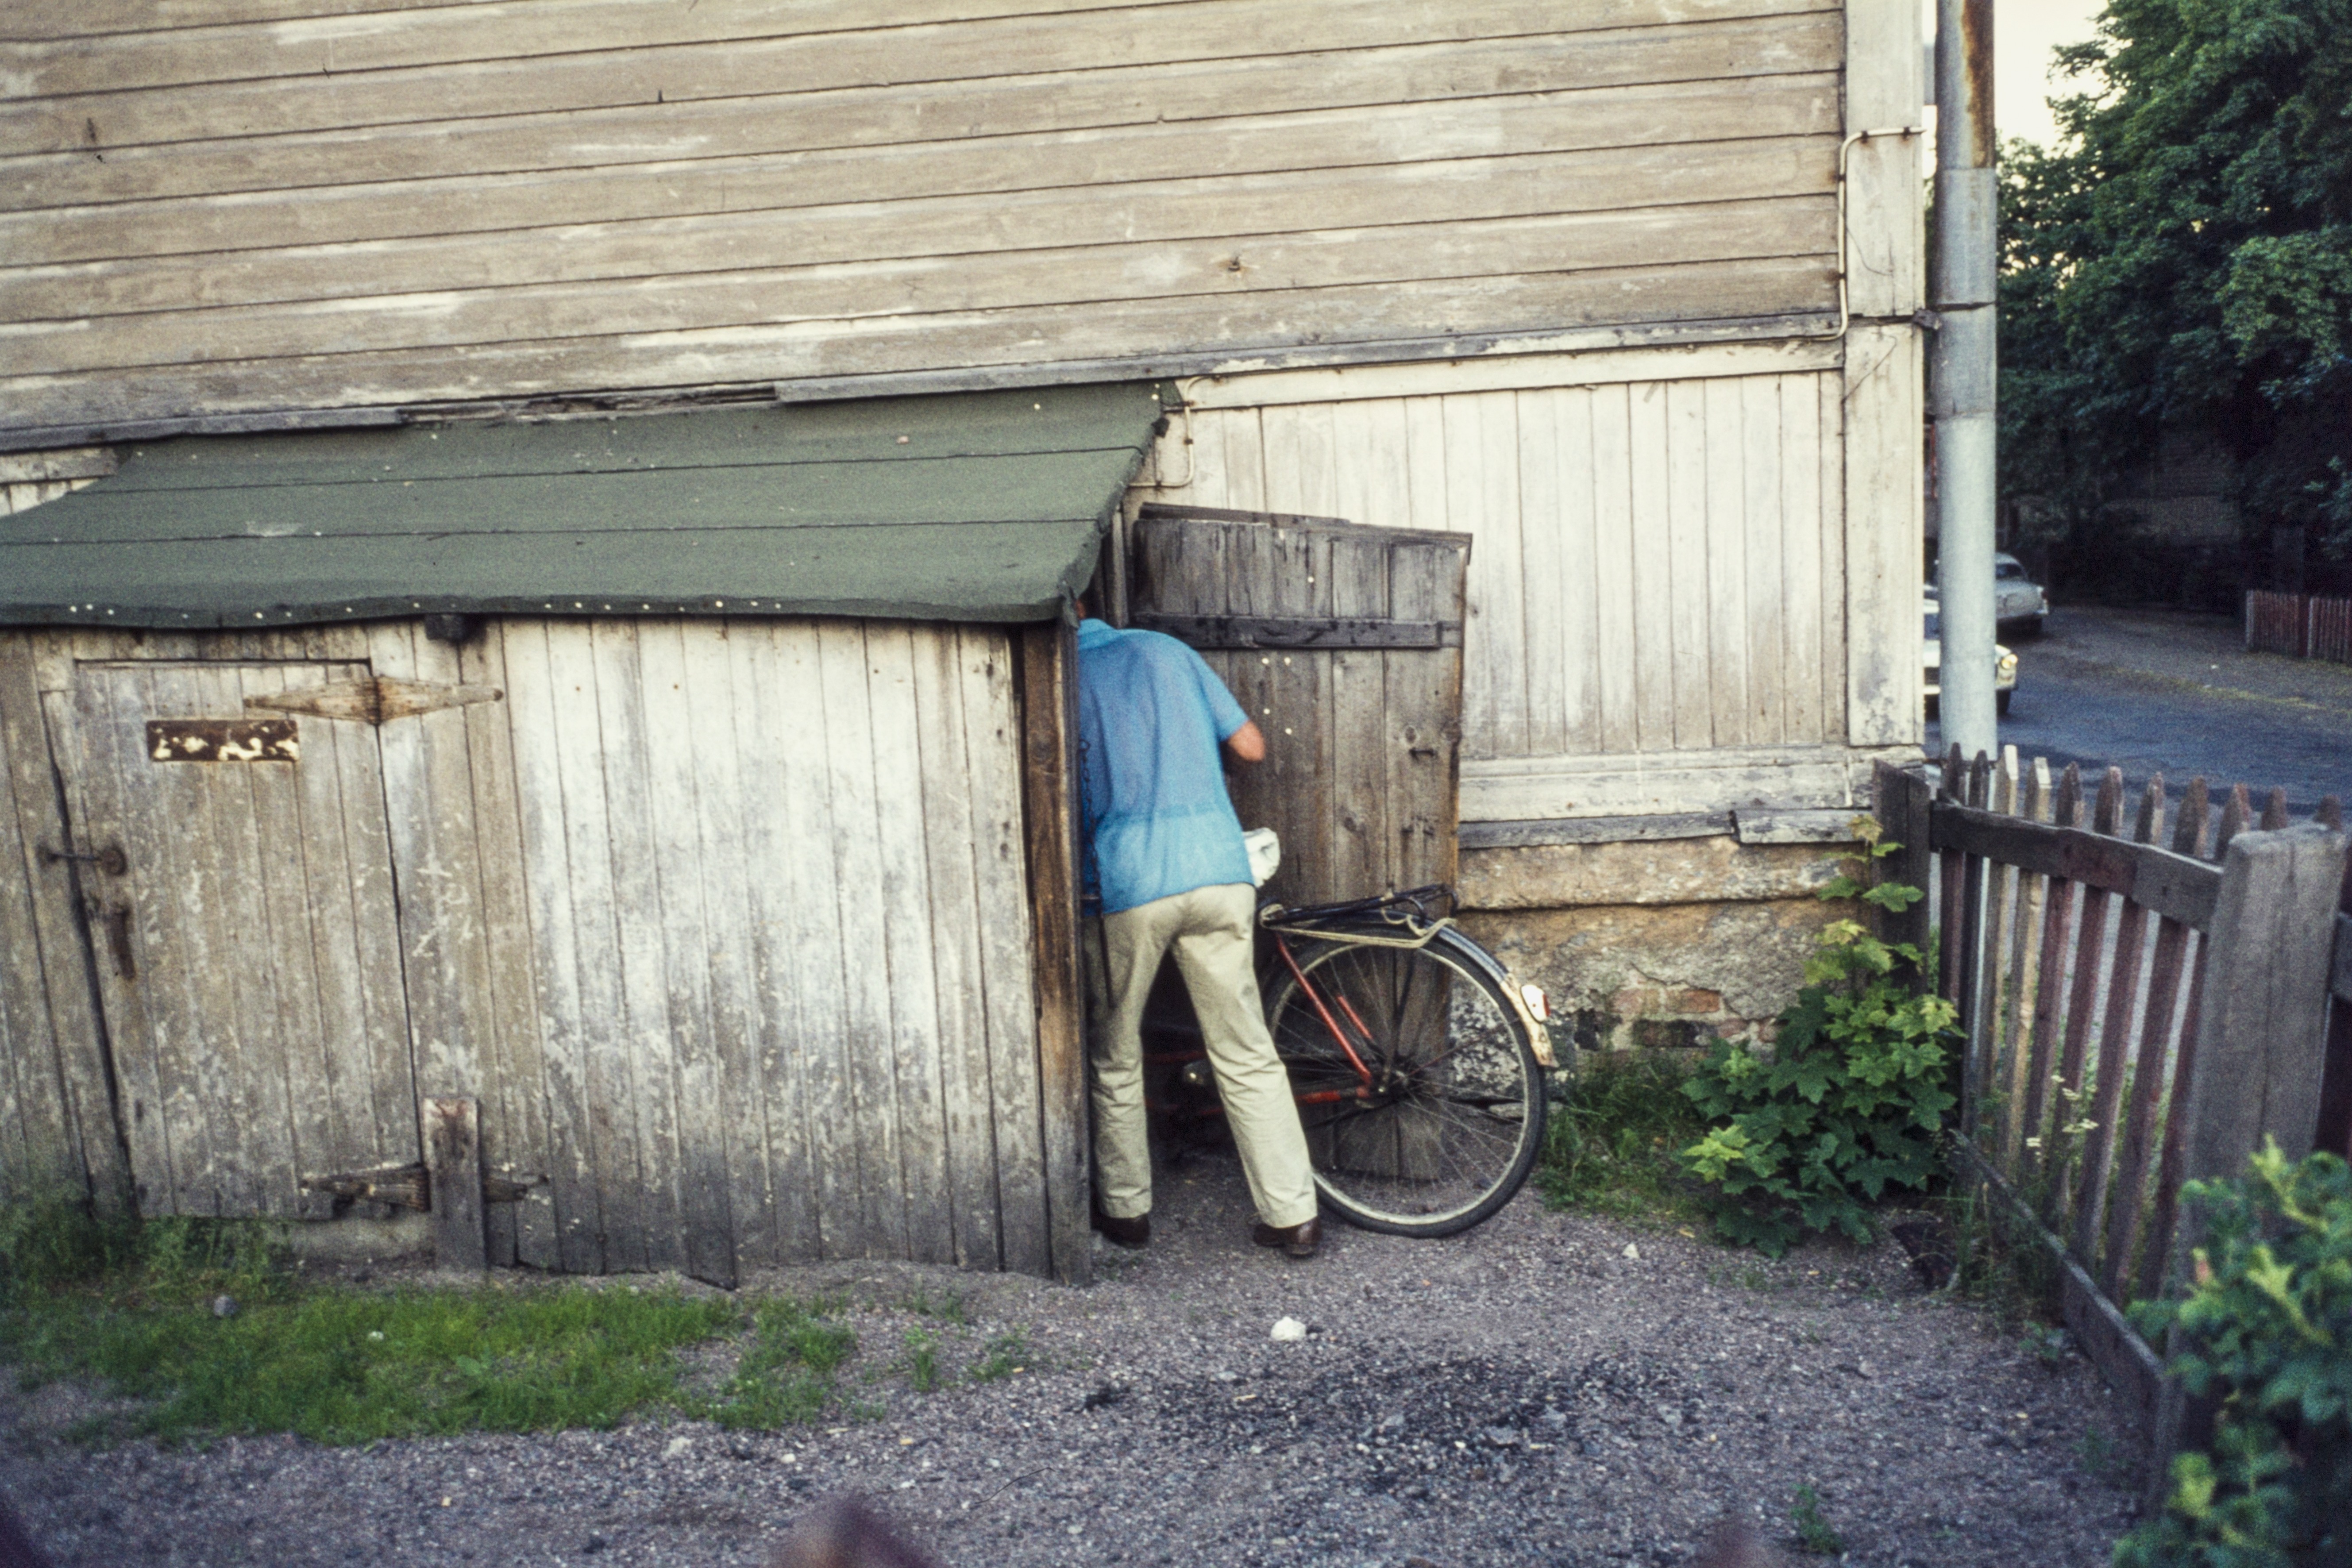 Mies taluttamassa polkupyöräänsä varastoon Puu-Pasilassa, Hertankatu 13. Valokuva on otettu rakennuksen Susannankadun puoleisesta päädystä.